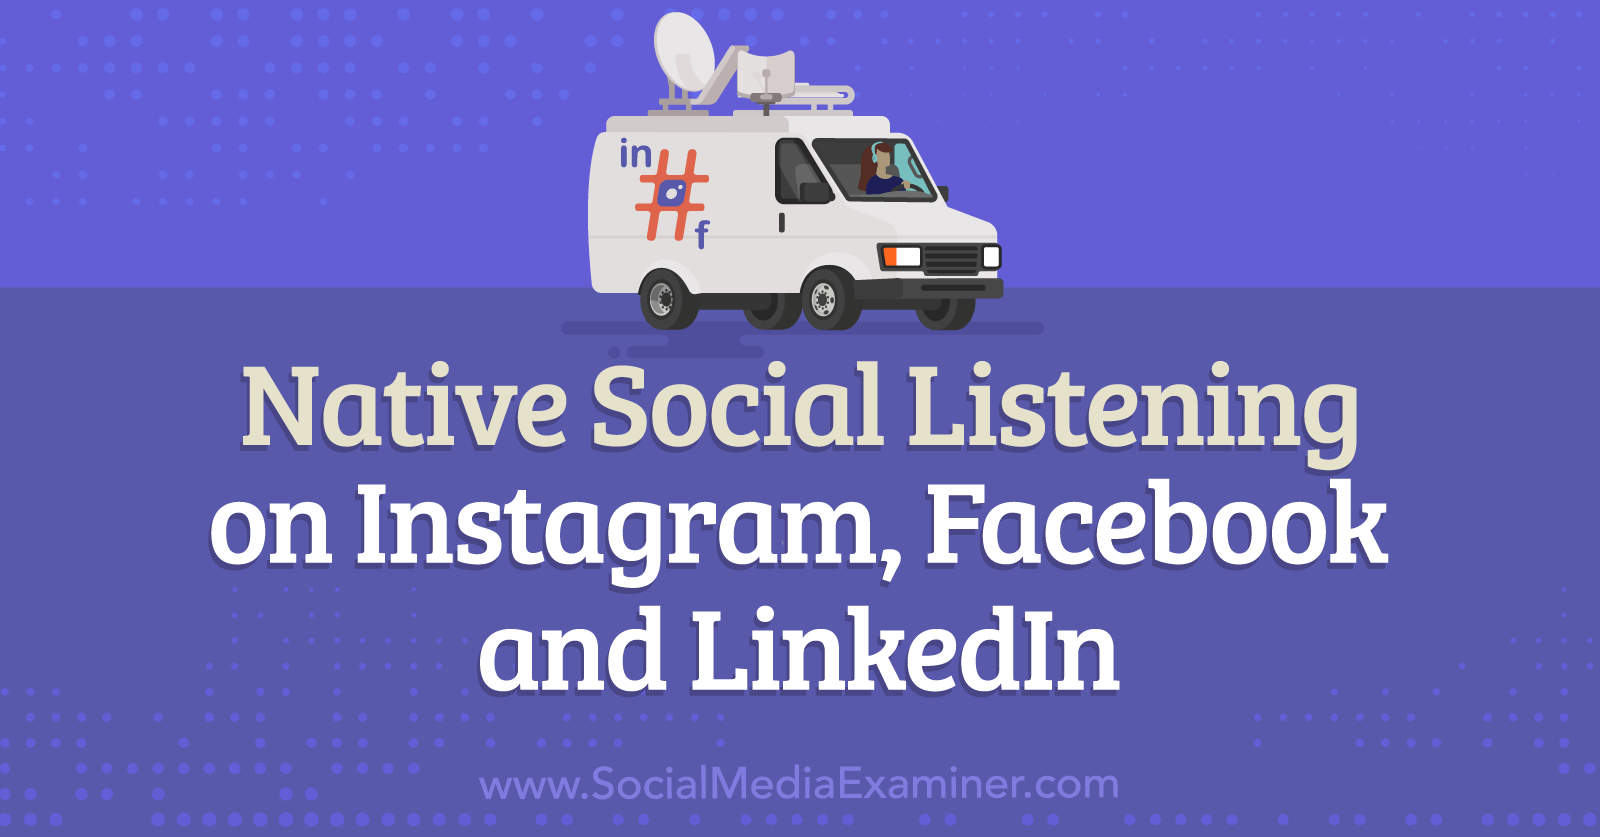 Native Social Listening on Instagram, Facebook, and LinkedIn by Social Media Examiner